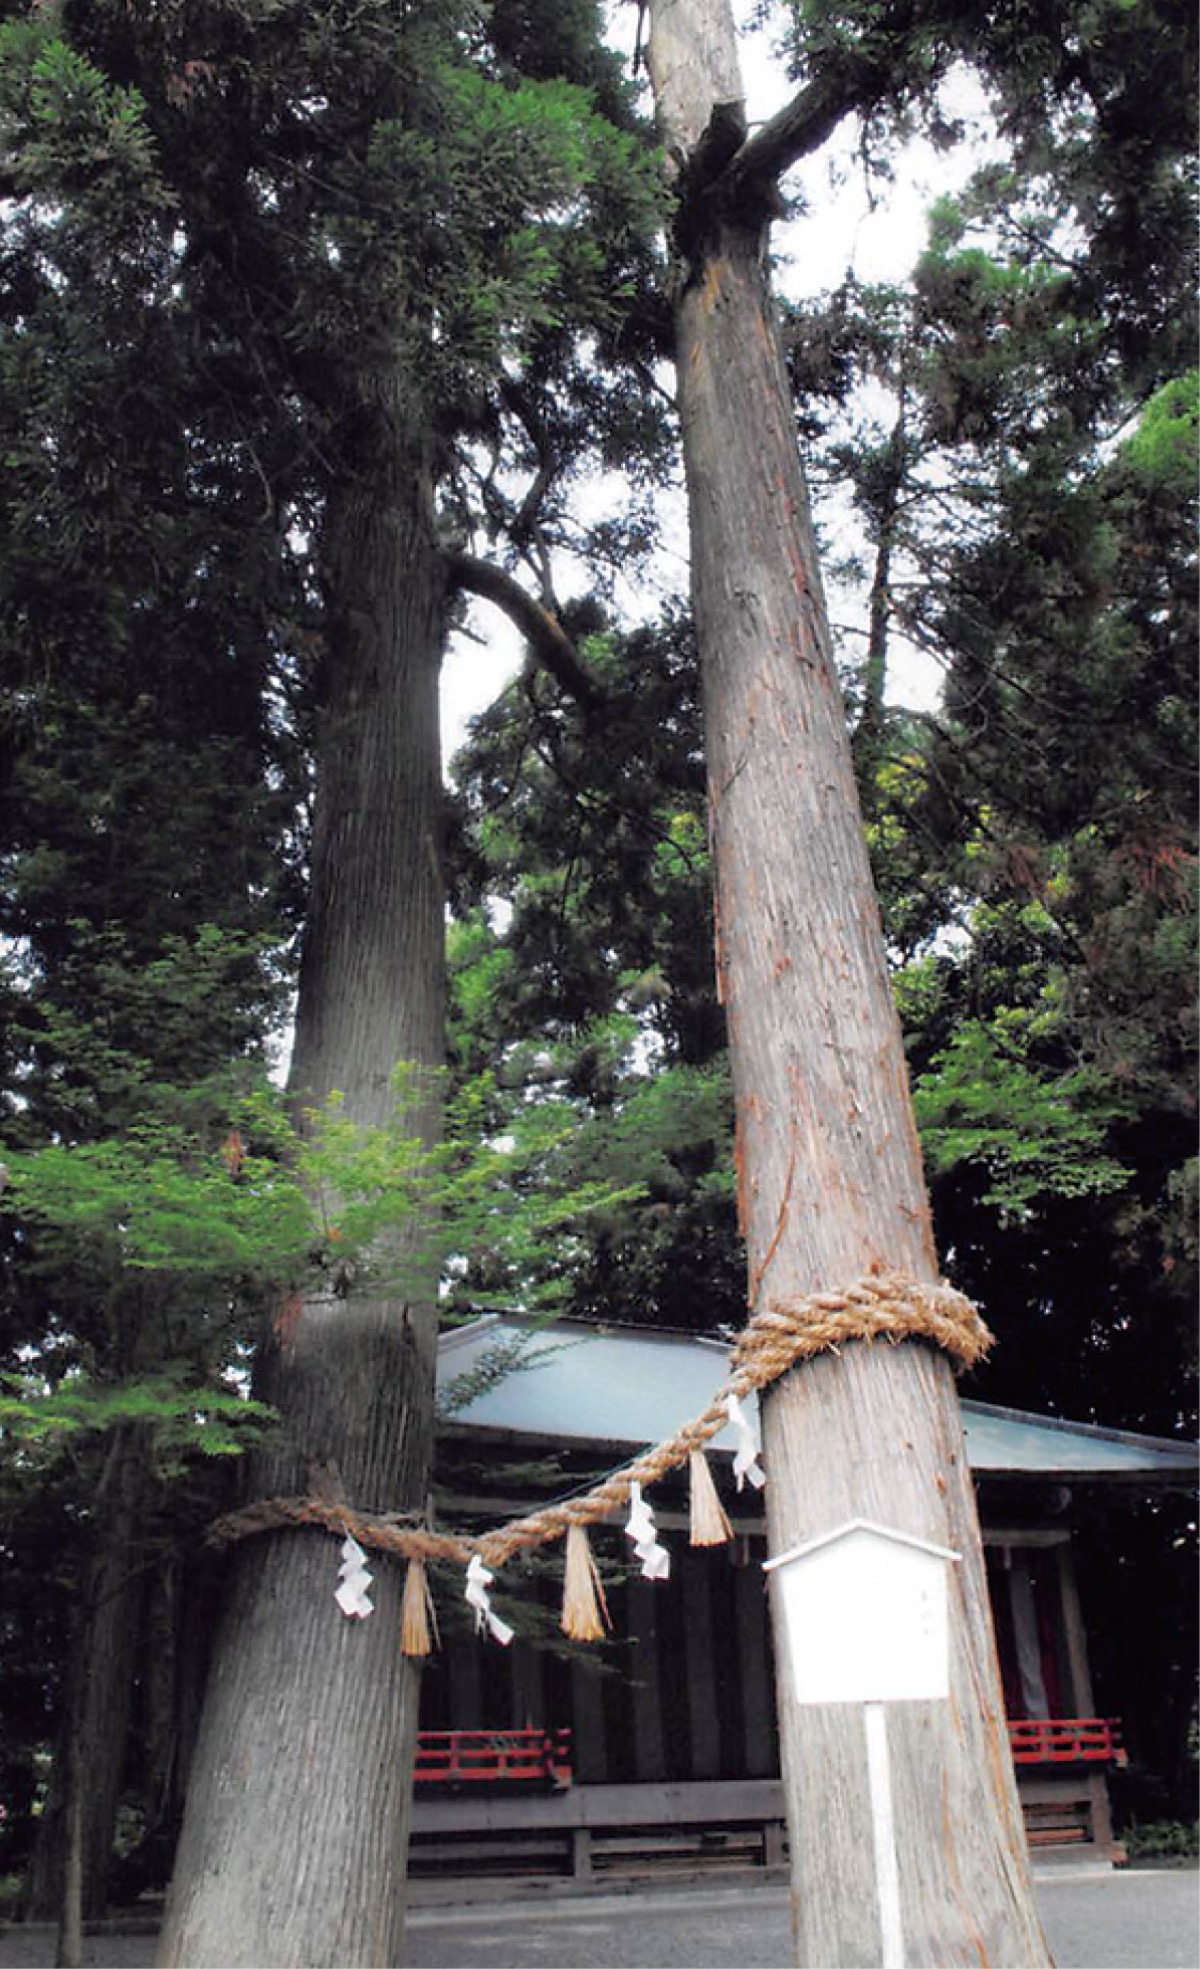 川勾神社 御神木の売札所あらたか 台風で倒れた400年杉生かす